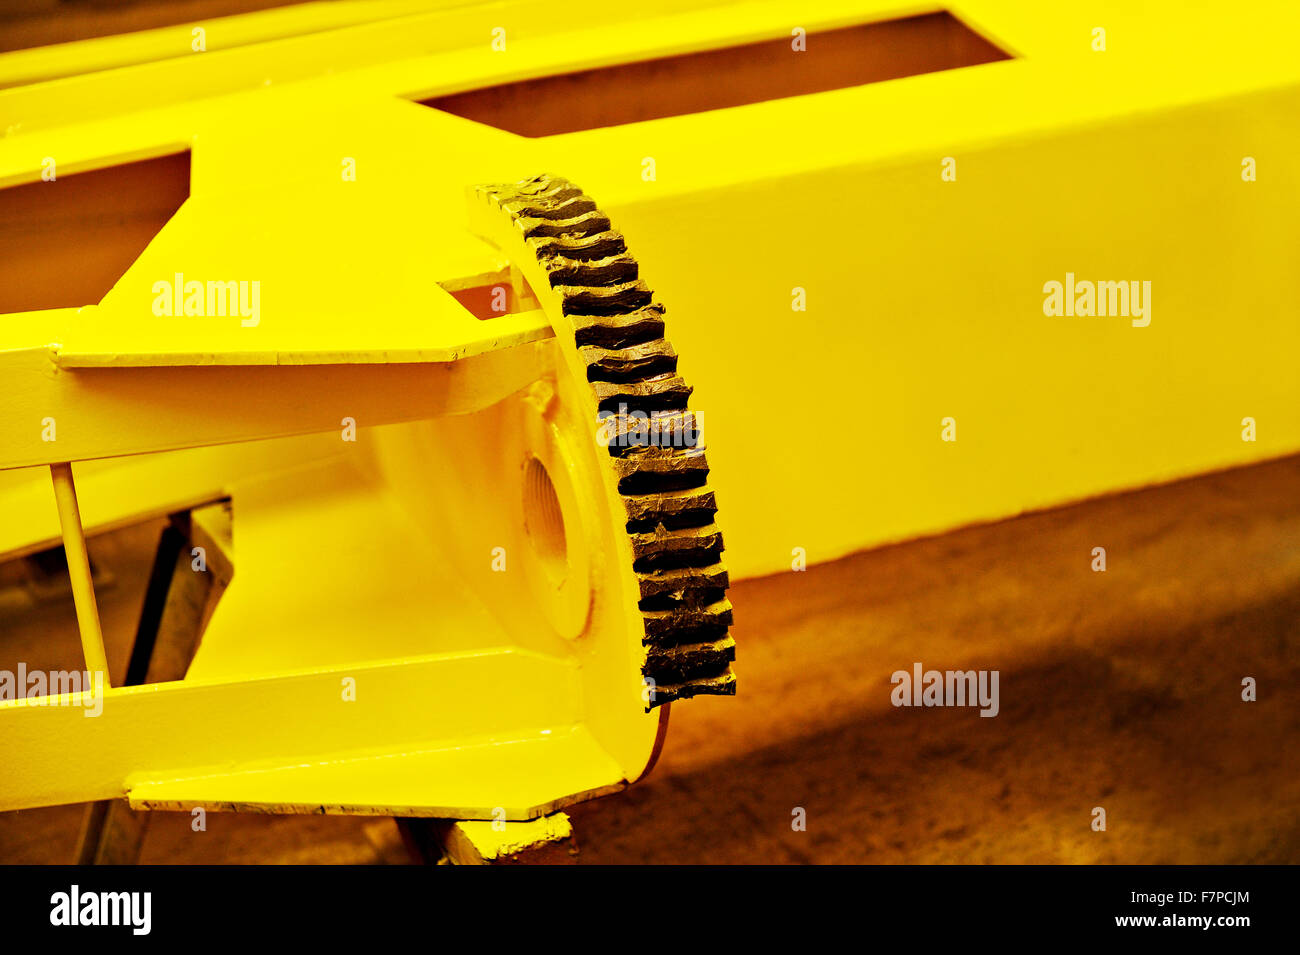 Grande industriale ingranaggio giallo con del grasso su di esso Foto Stock